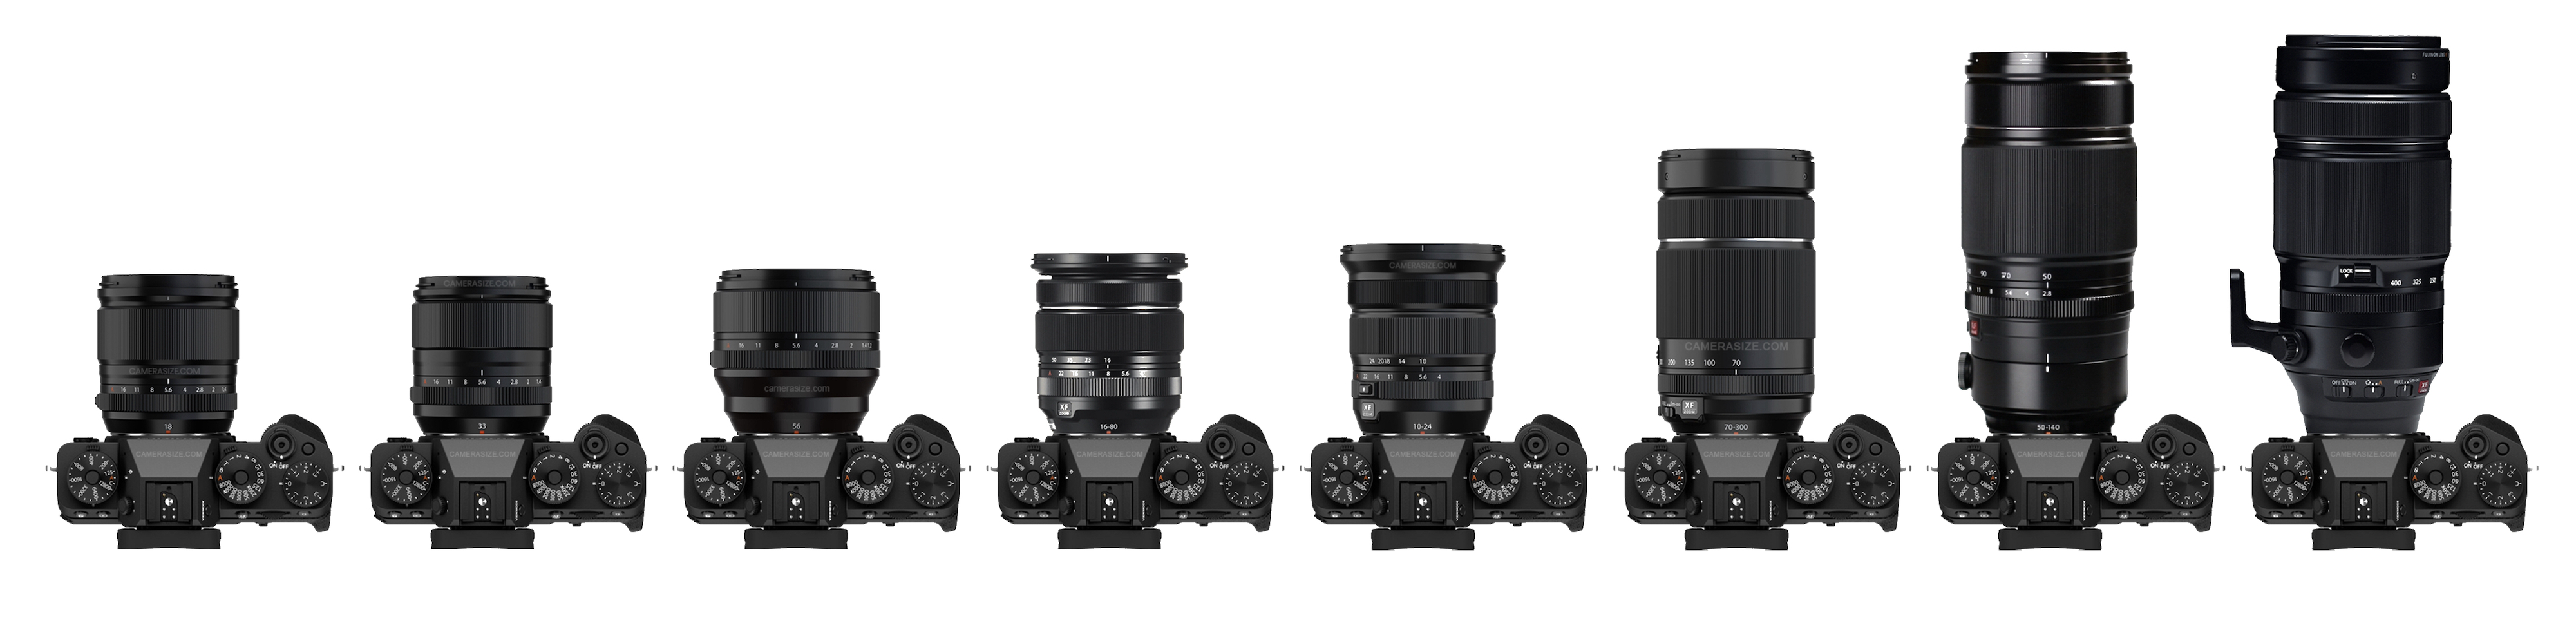 Lens Size Comparison